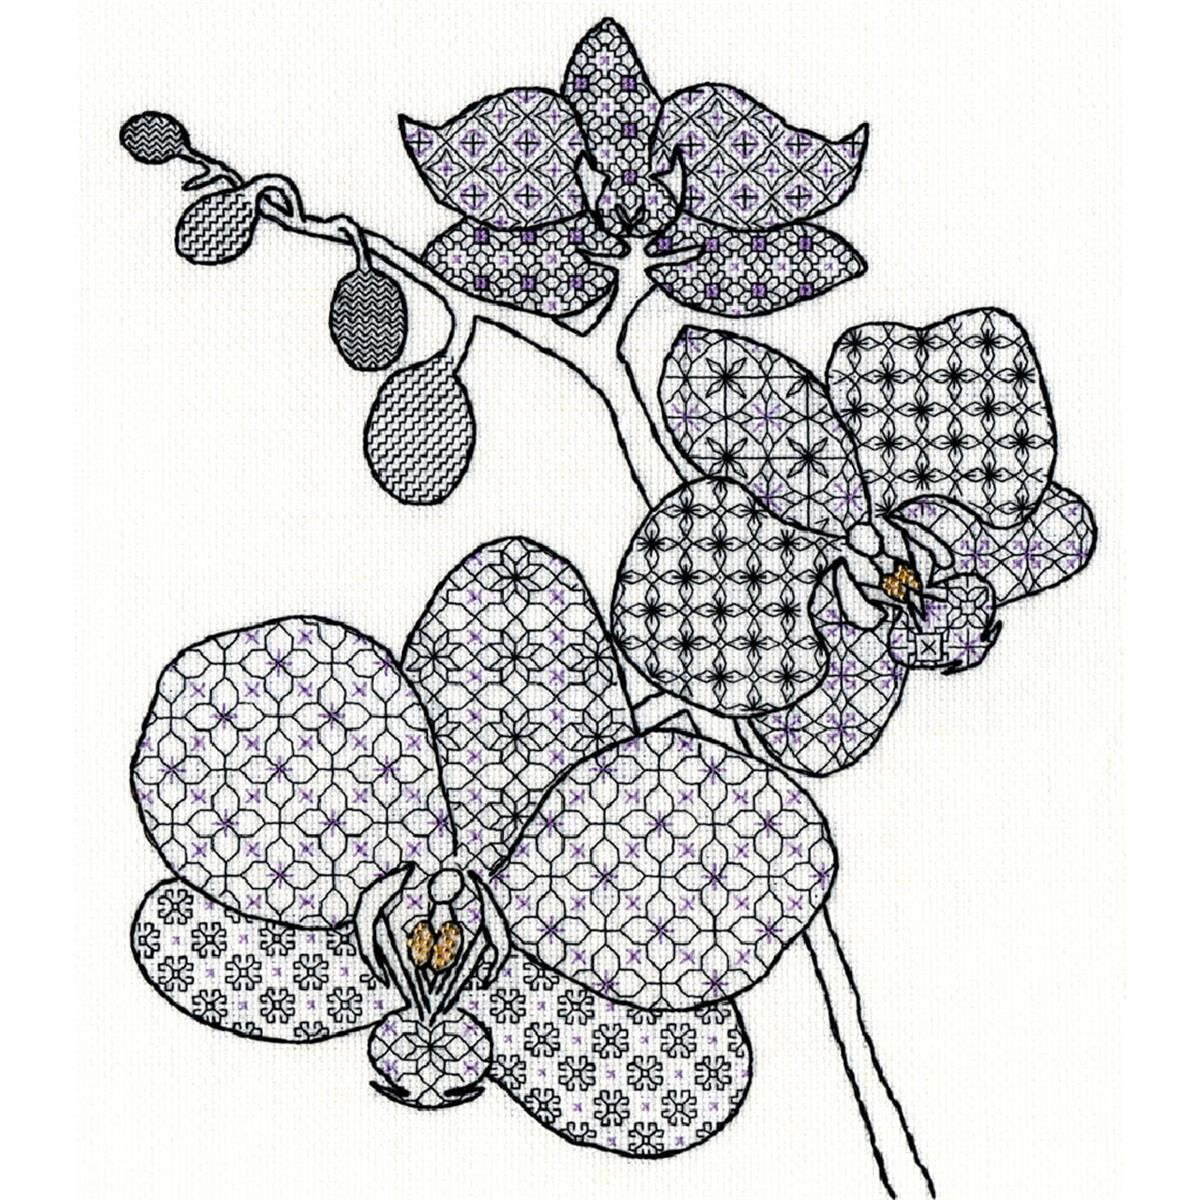 На вышивке изображена ветка орхидеи с тремя цветками....